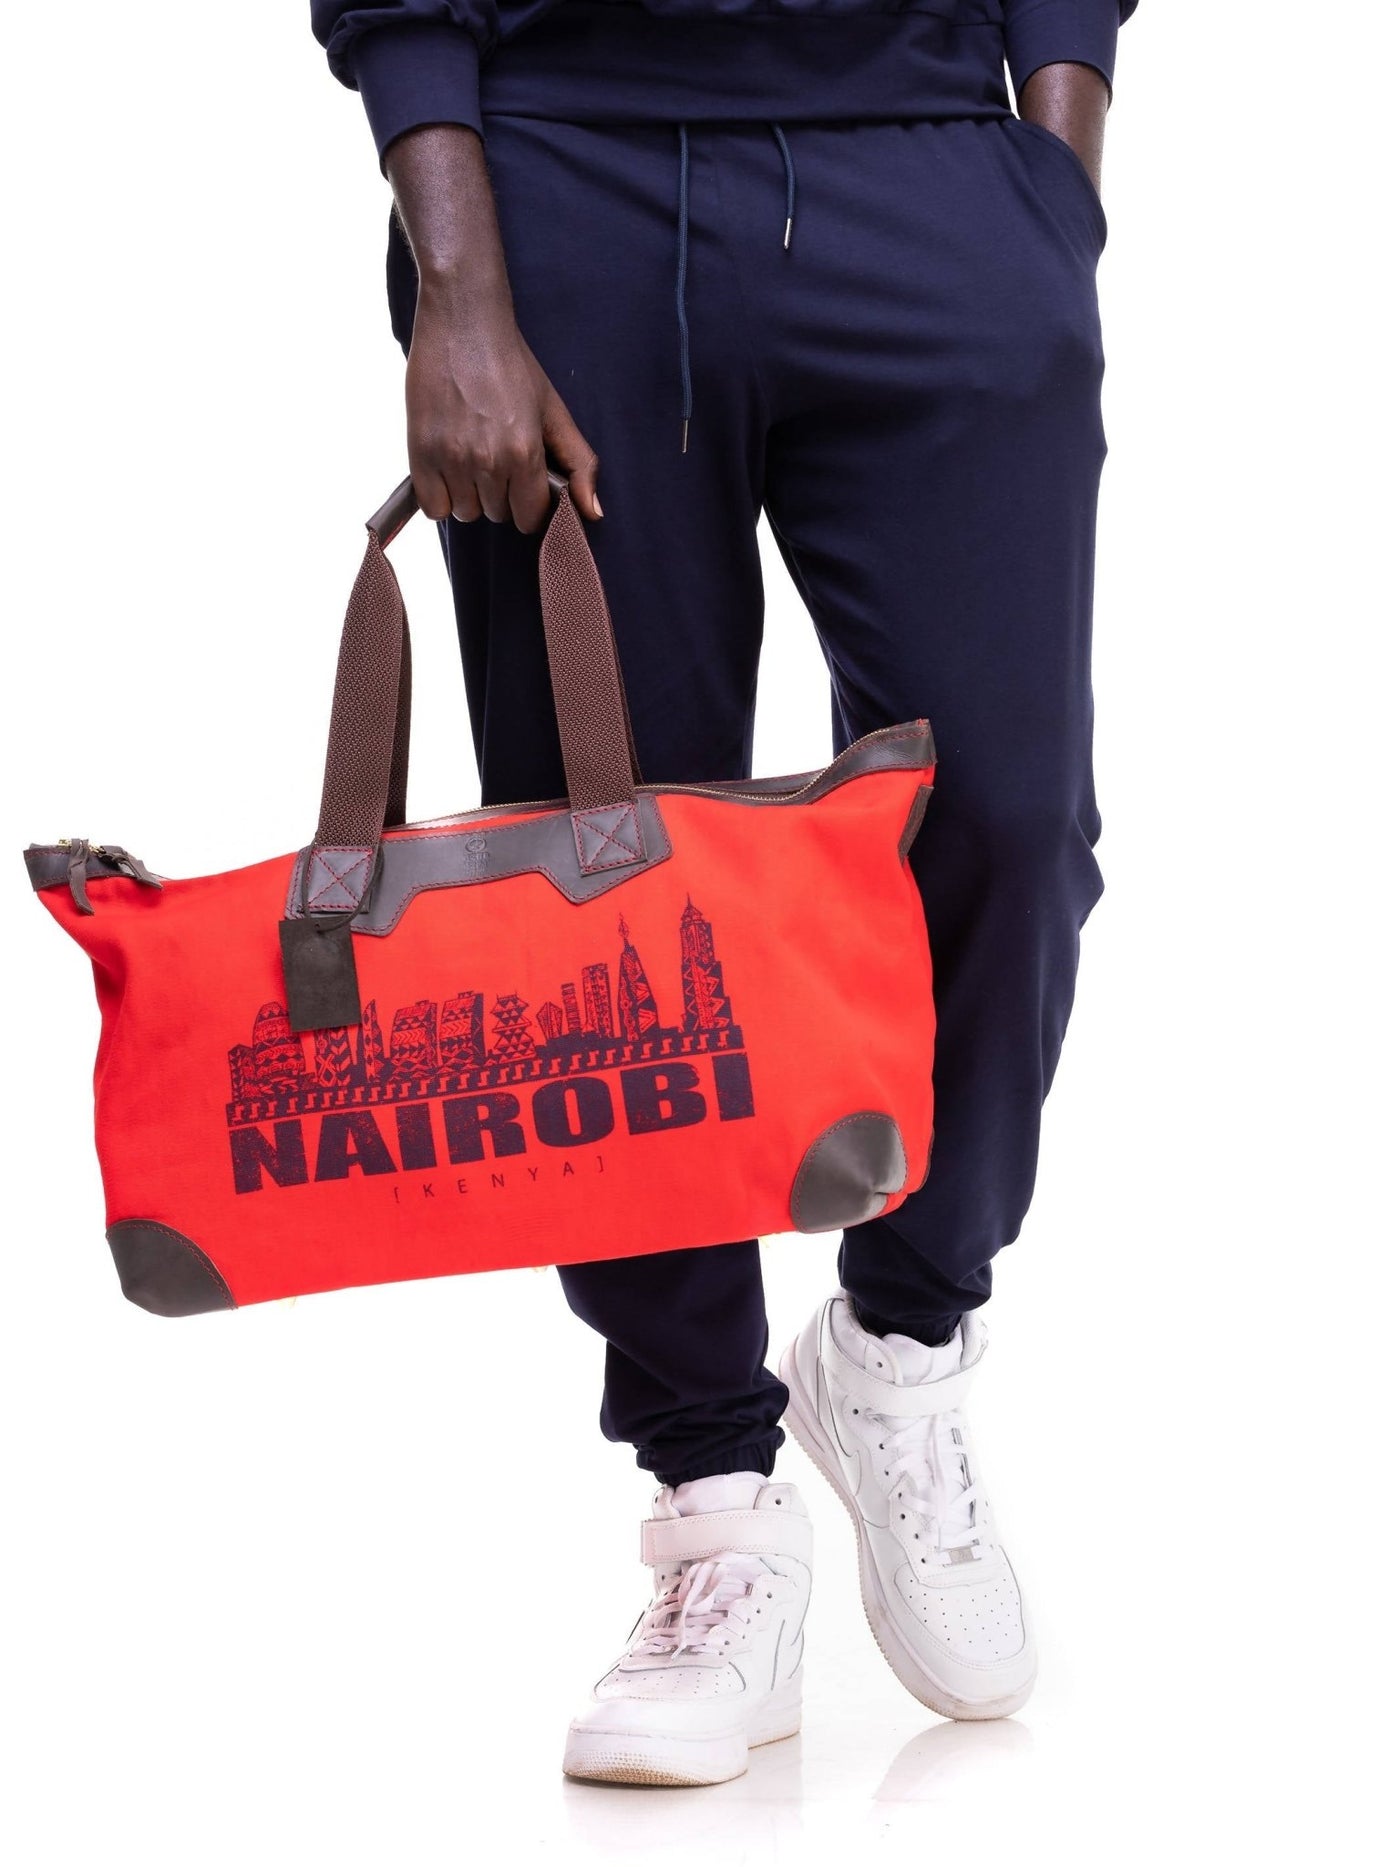 Eden Leather Canvas & Leather Nairobi Travel Bag - Red - Shop Zetu Kenya